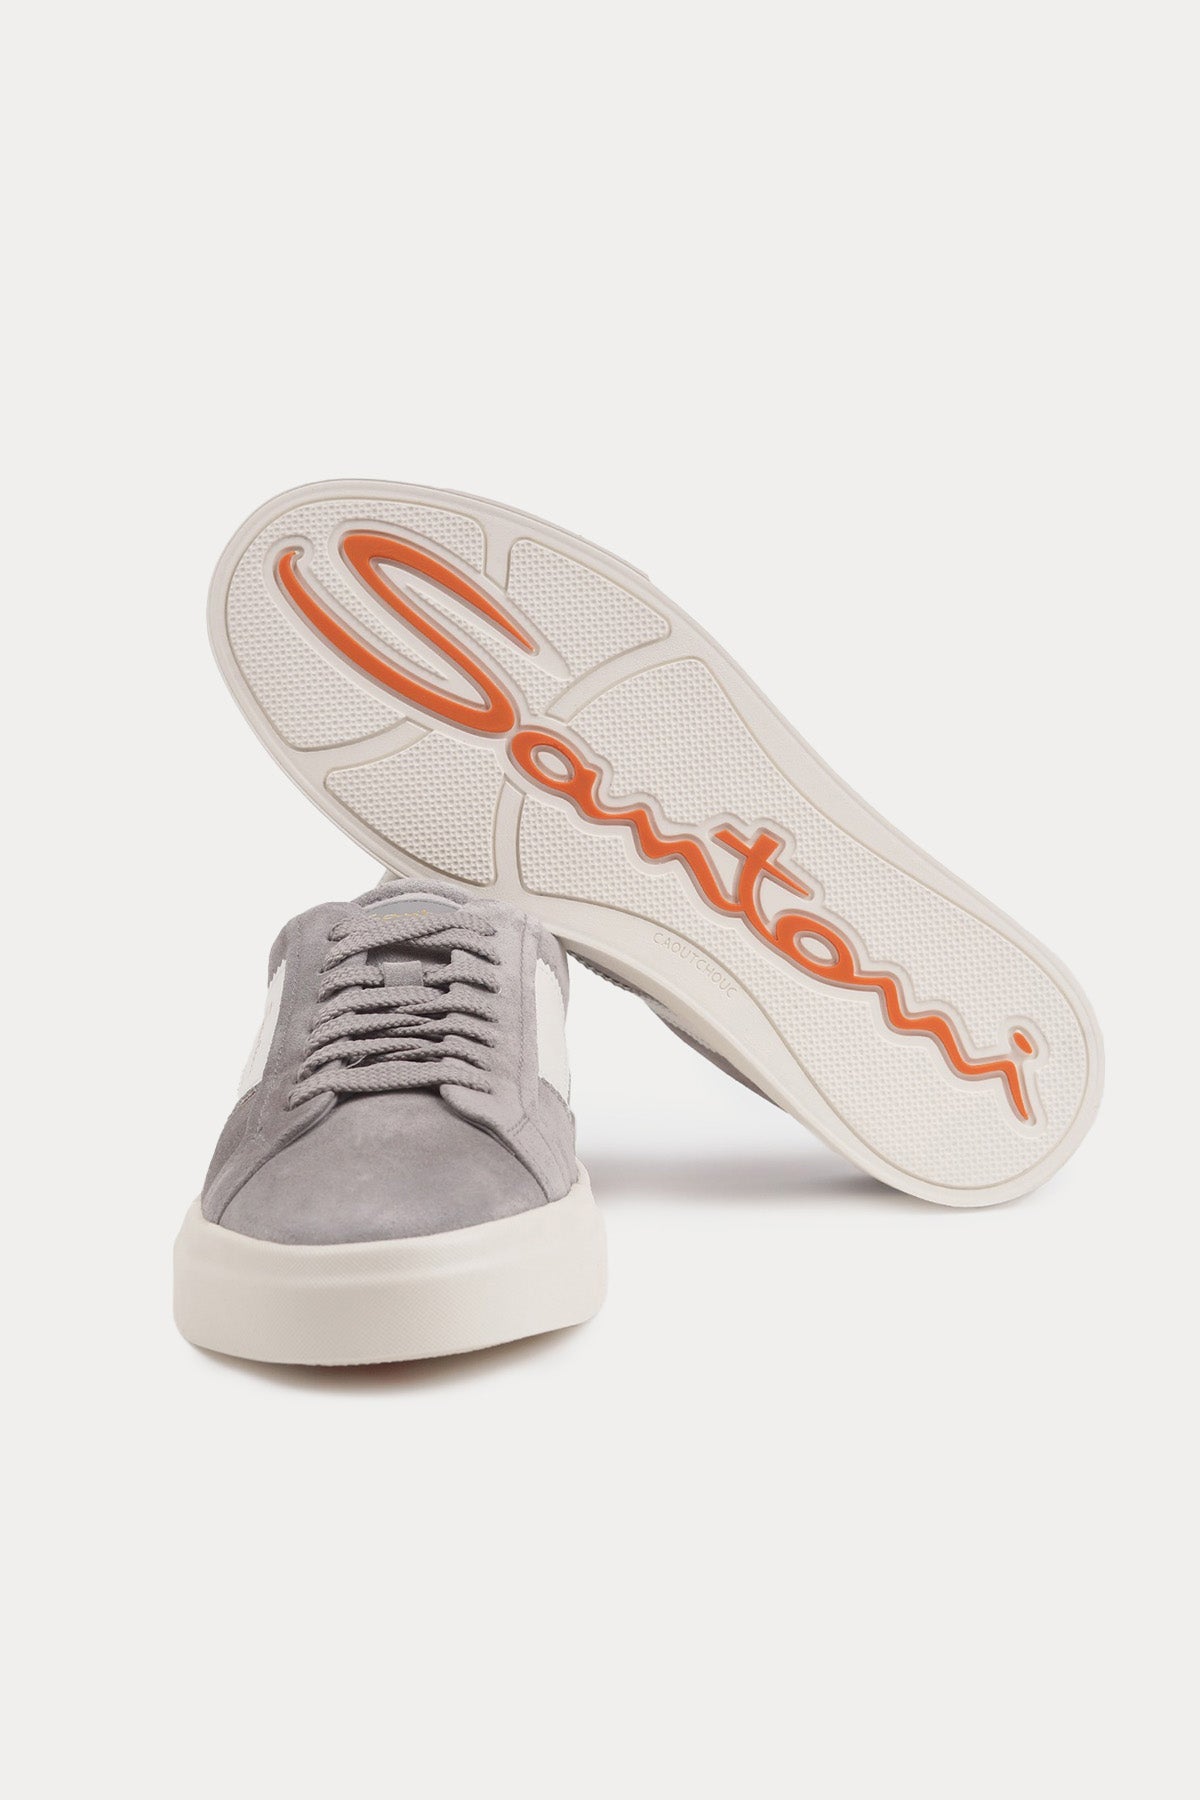 Santoni Double Buckle Süet Sneaker Ayakkabı